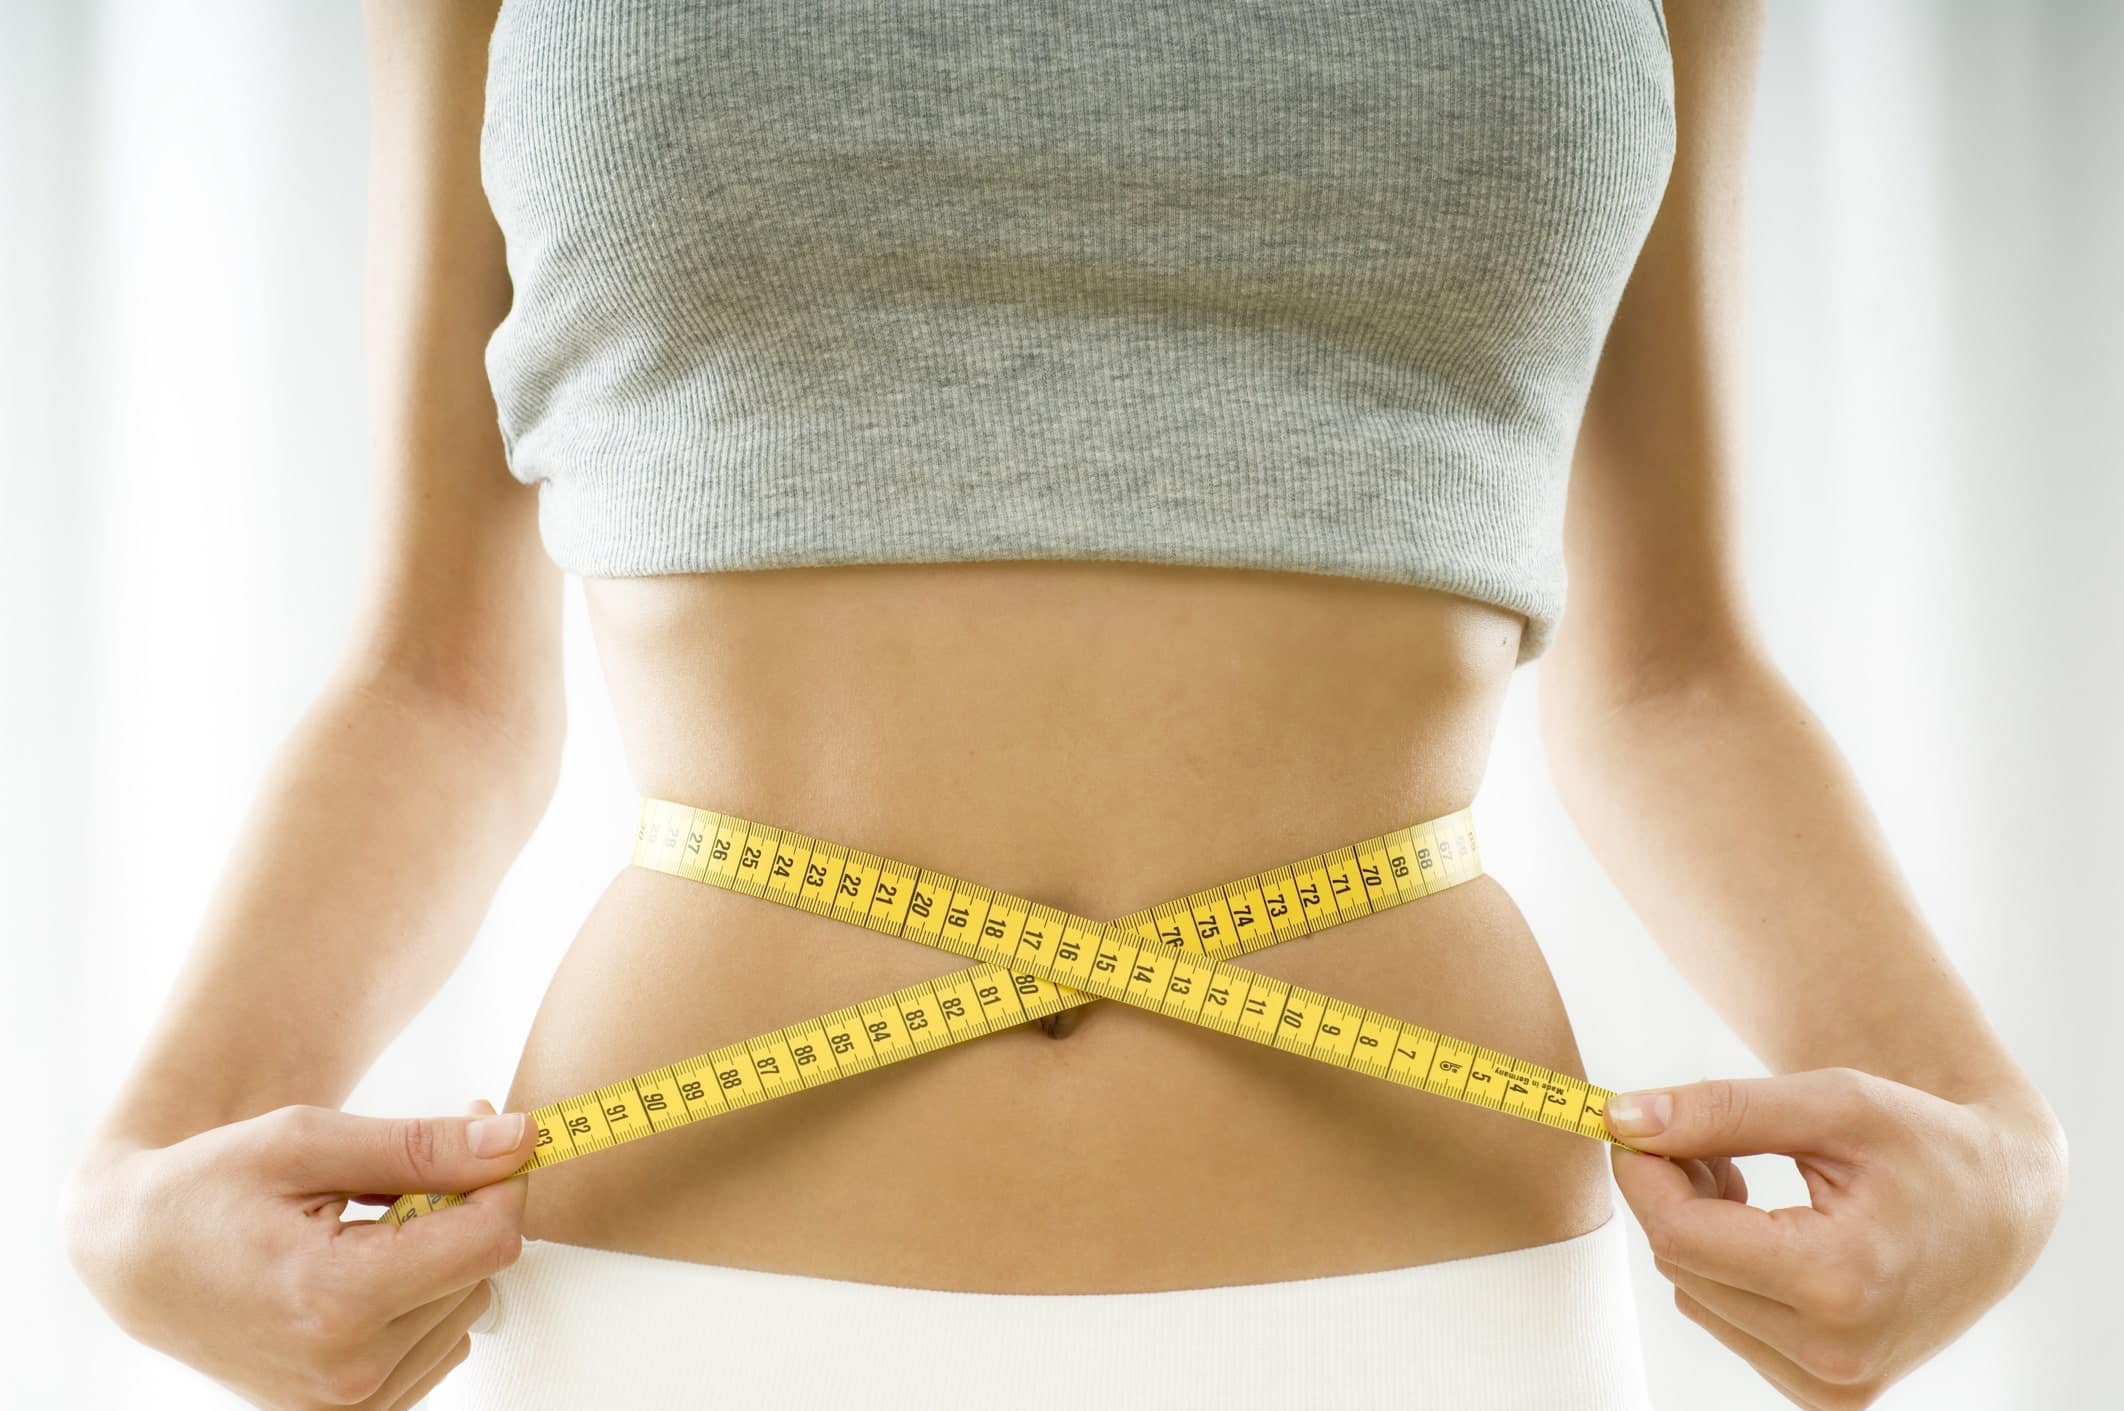 Crediti iStock - Le diete per perdere peso